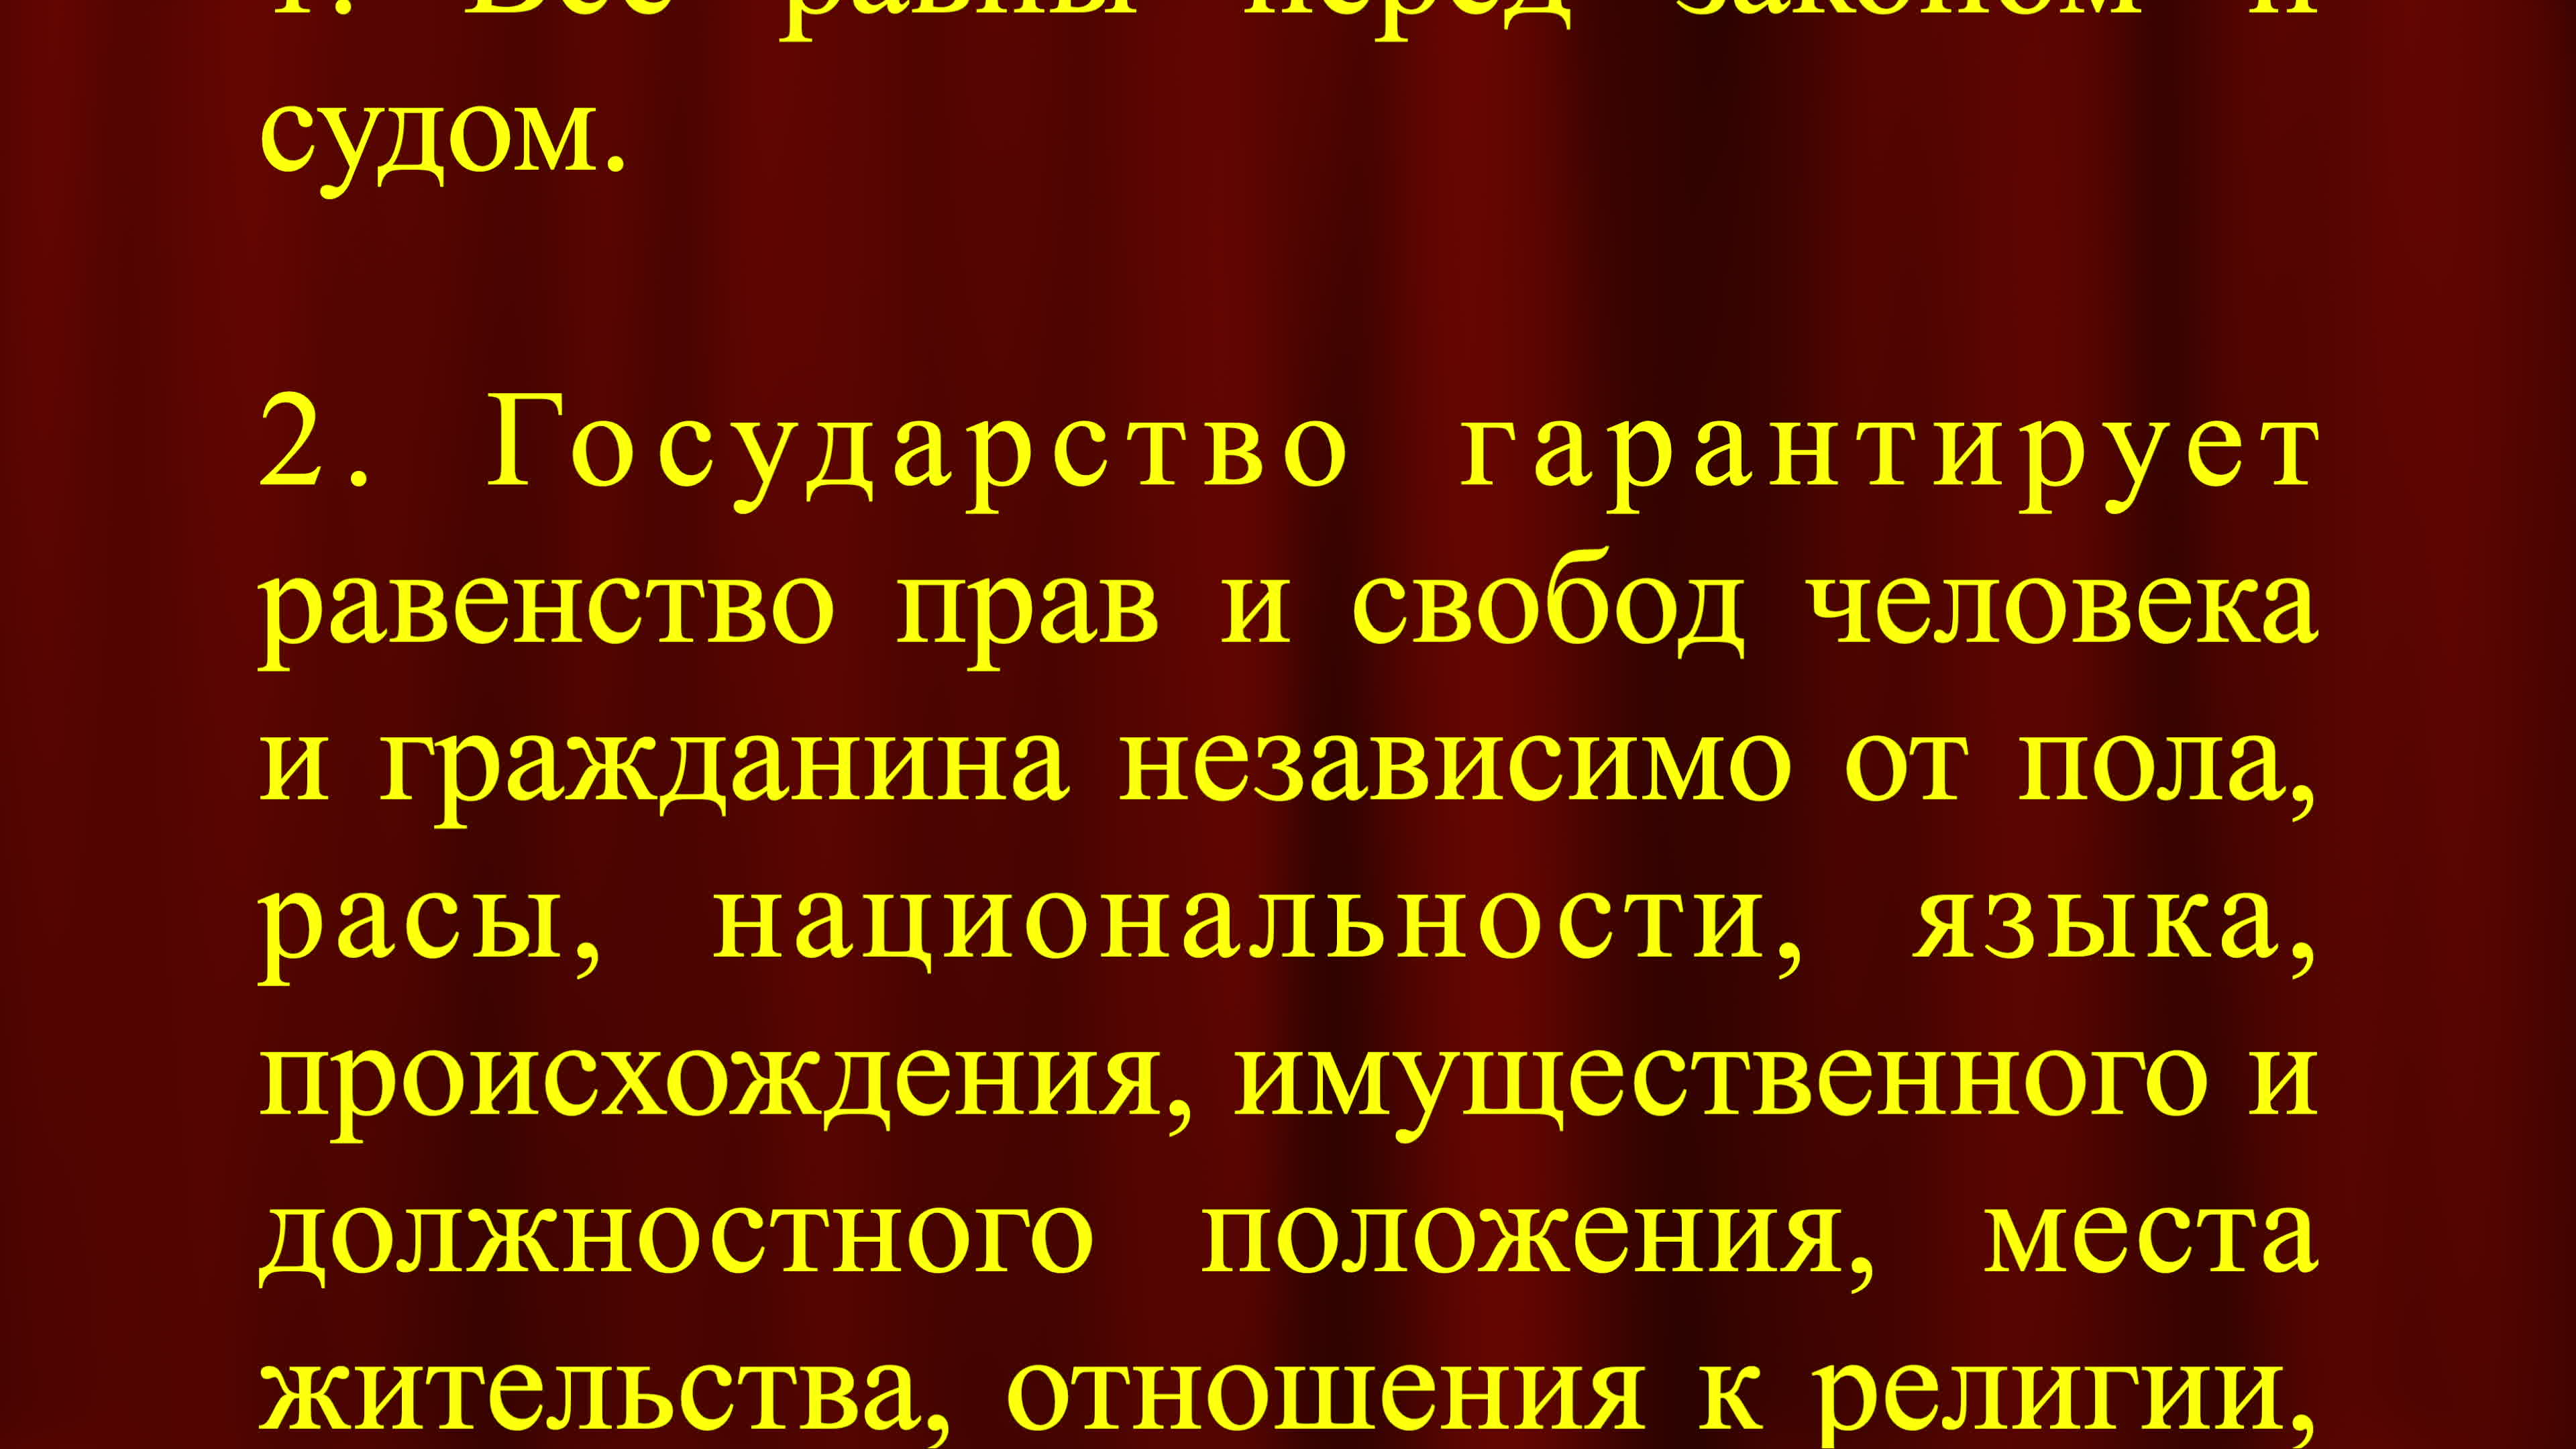 Статья 19 Конституции РФ. Статья свободы.